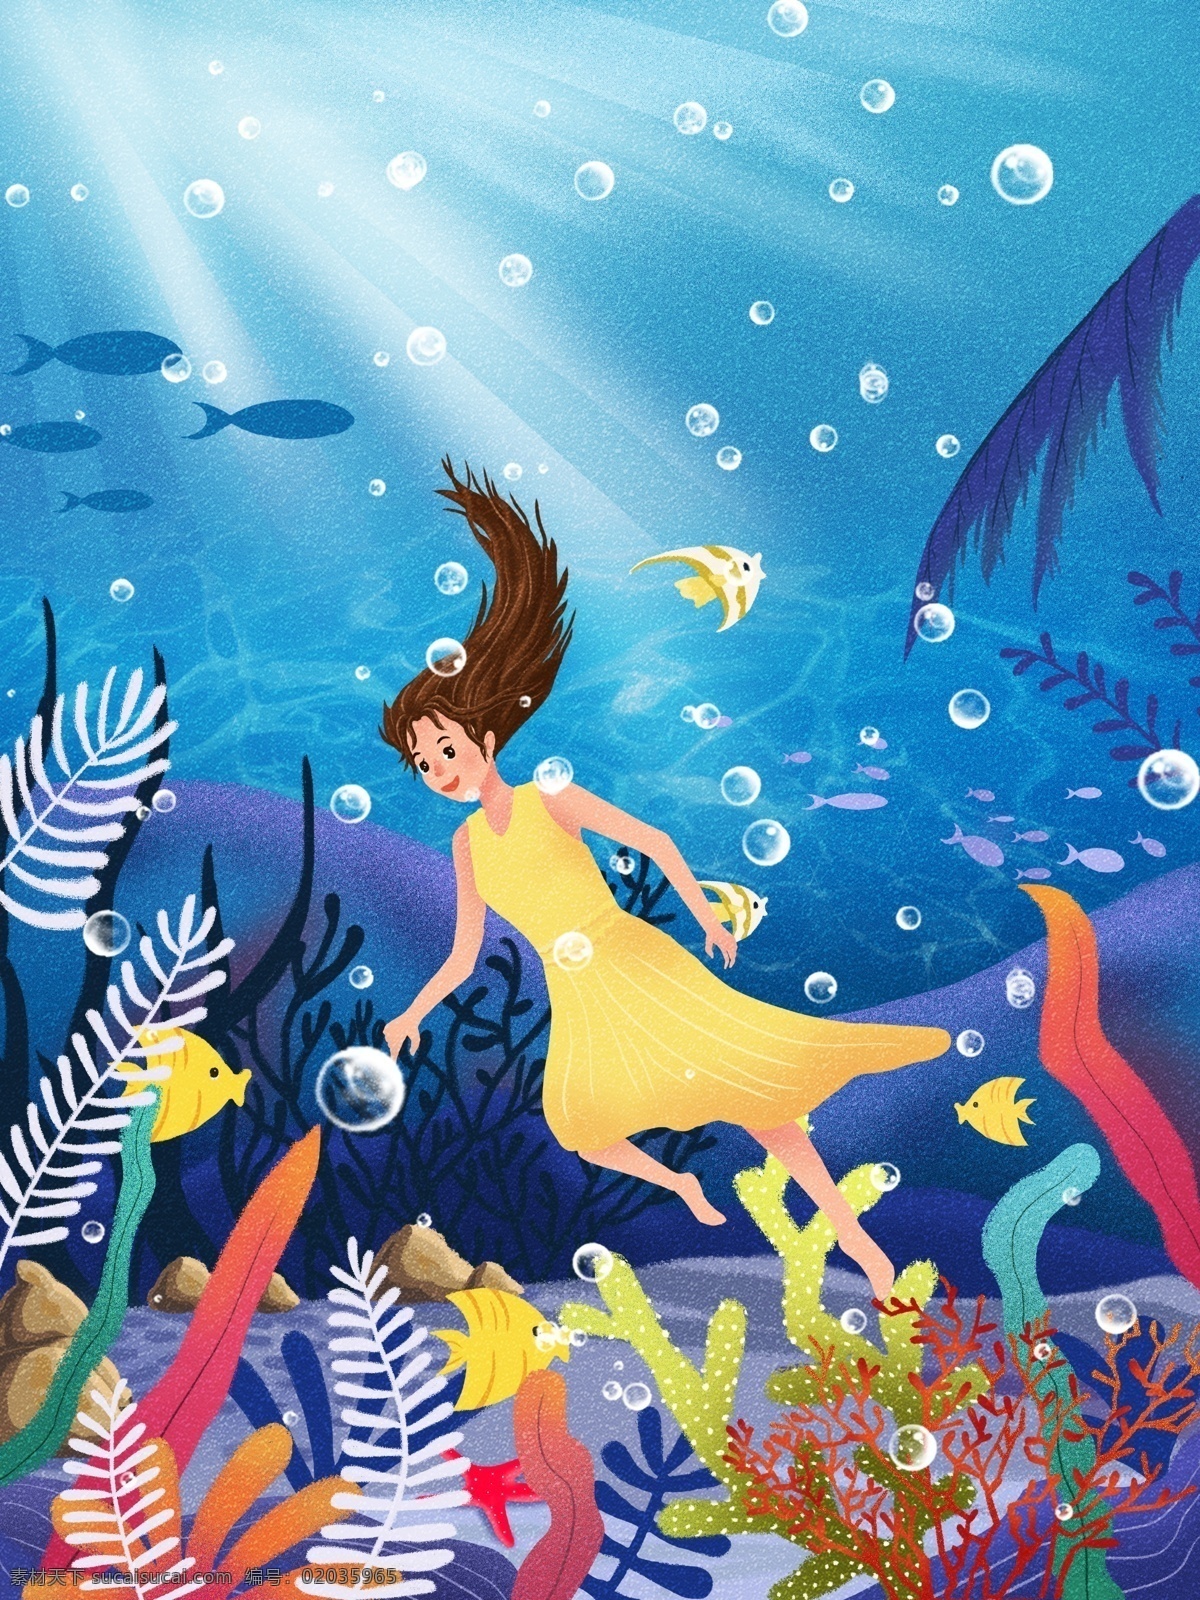 唯美 清新 世界 海洋 日 插画 唯美清新 蓝色海洋 海底世界 海洋插画 女孩 游鱼 微信用图 手机用图 世界海洋日 海报用图